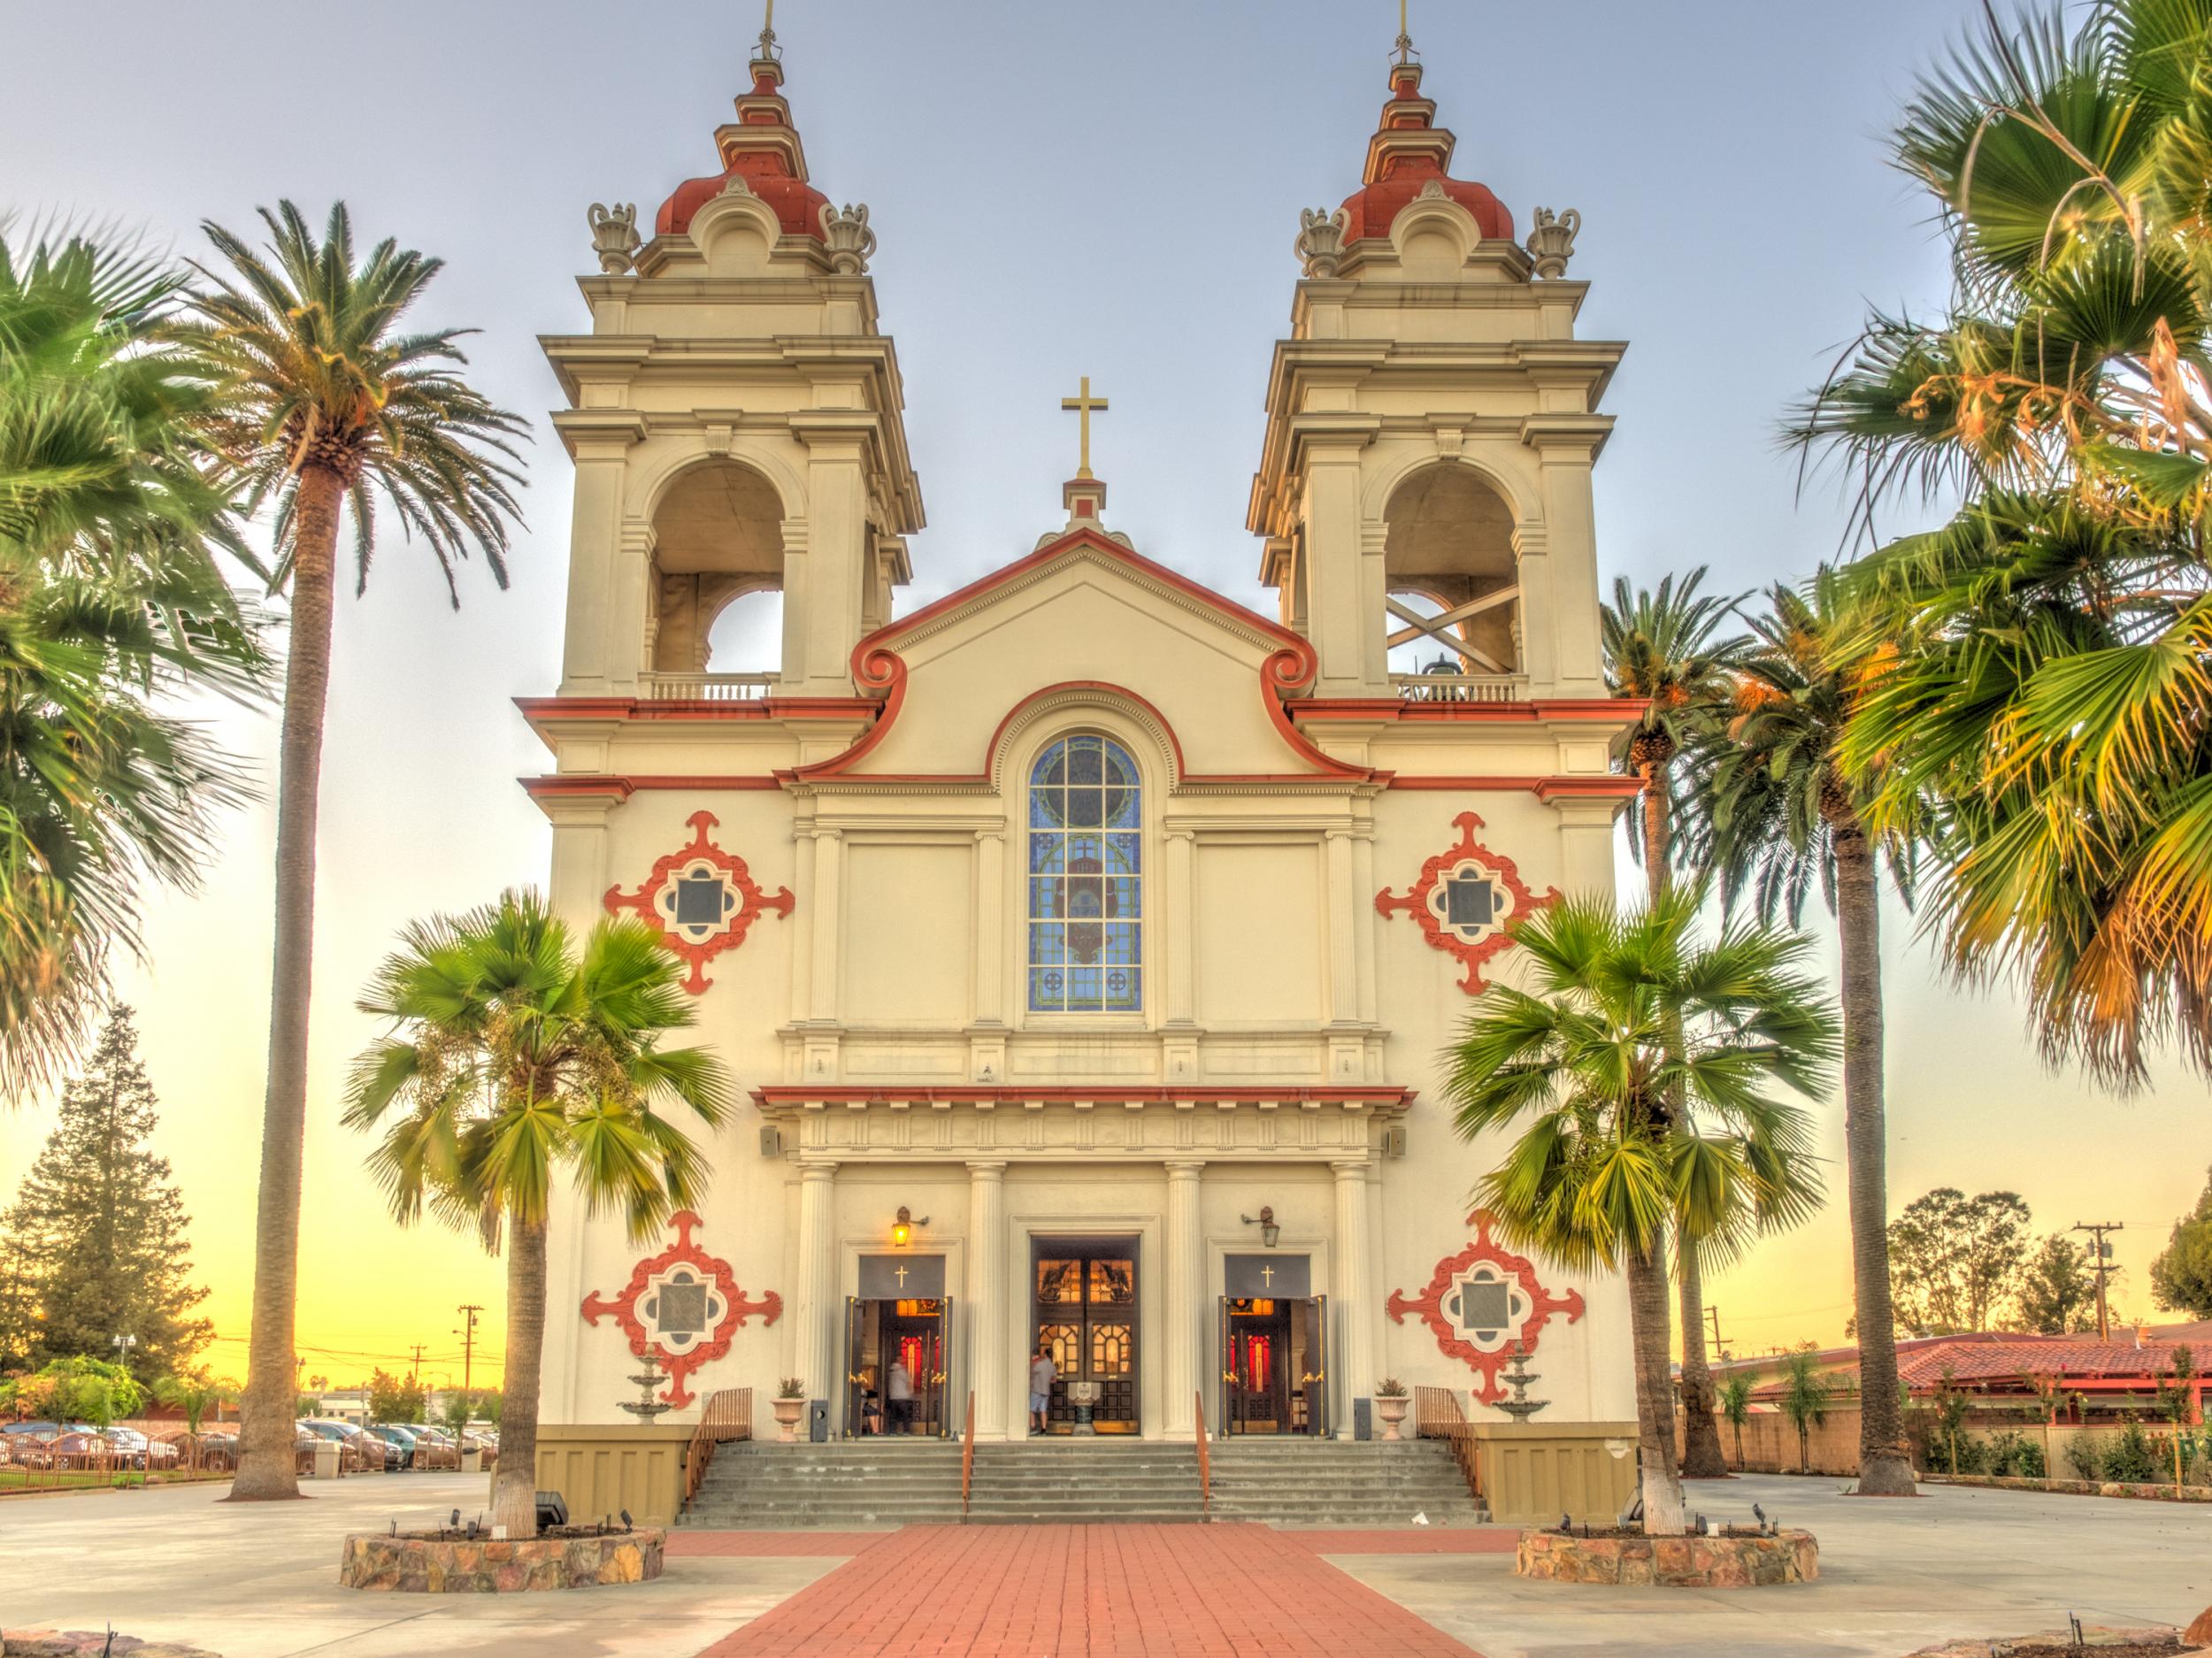 A Portuguese church in San Jose